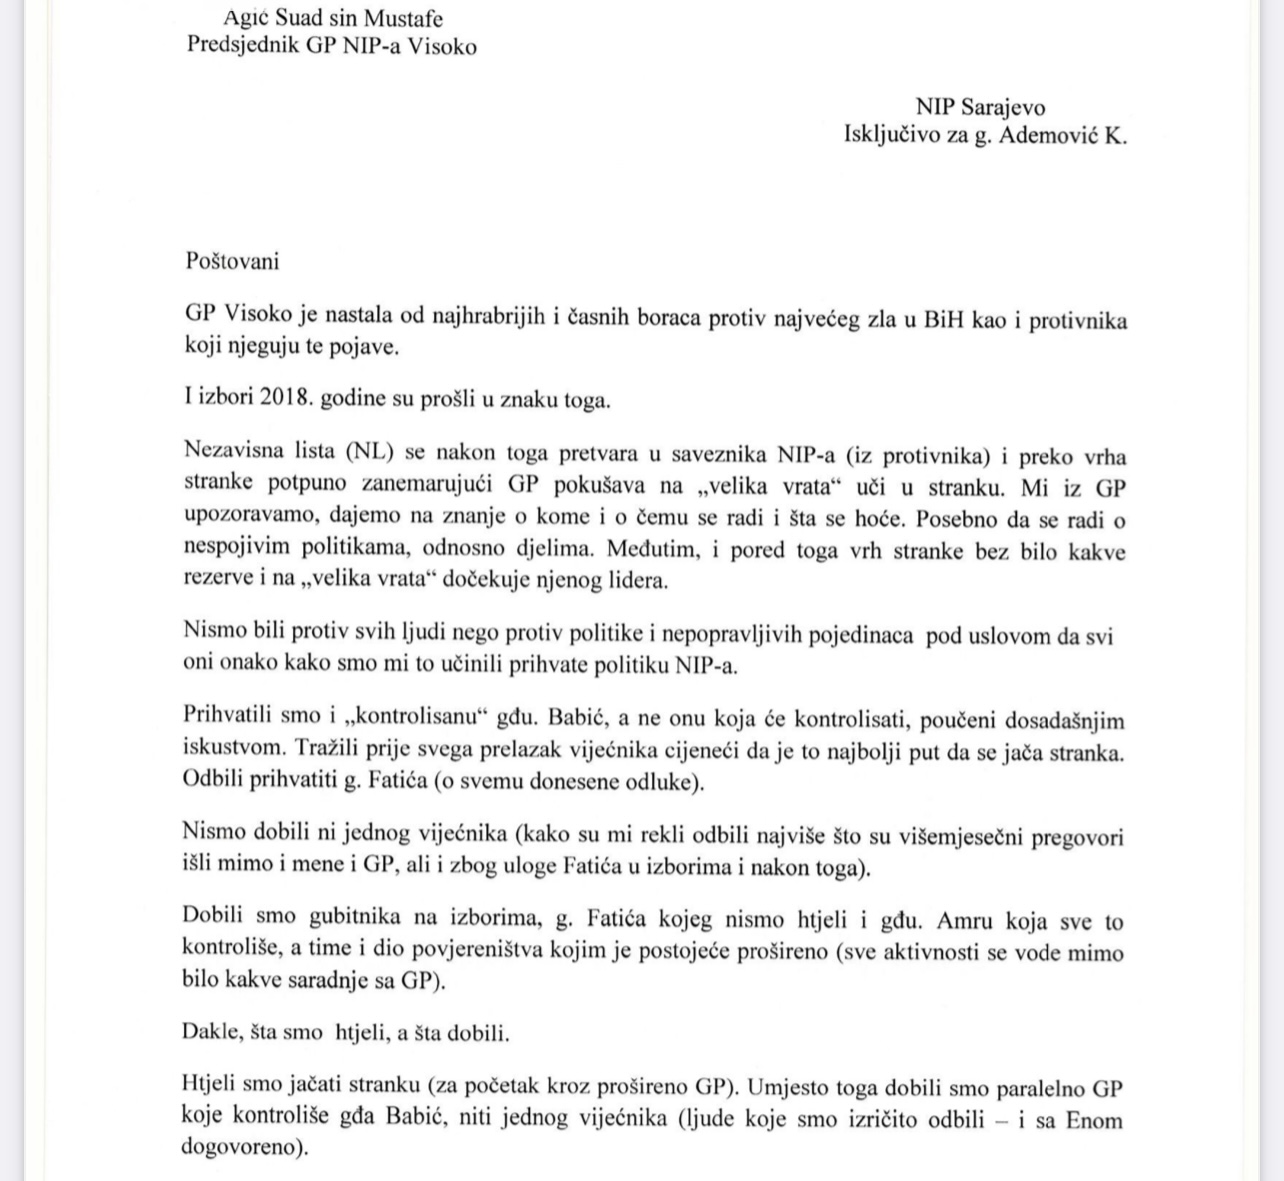 Povodom odluke Predsjedništva NiP-a o imenovanju novog Povjereništva GO NiP Visoko, bivši Predsjednik GIO NiP Visoko, Agić Suad, objavljuje razloge ostavke